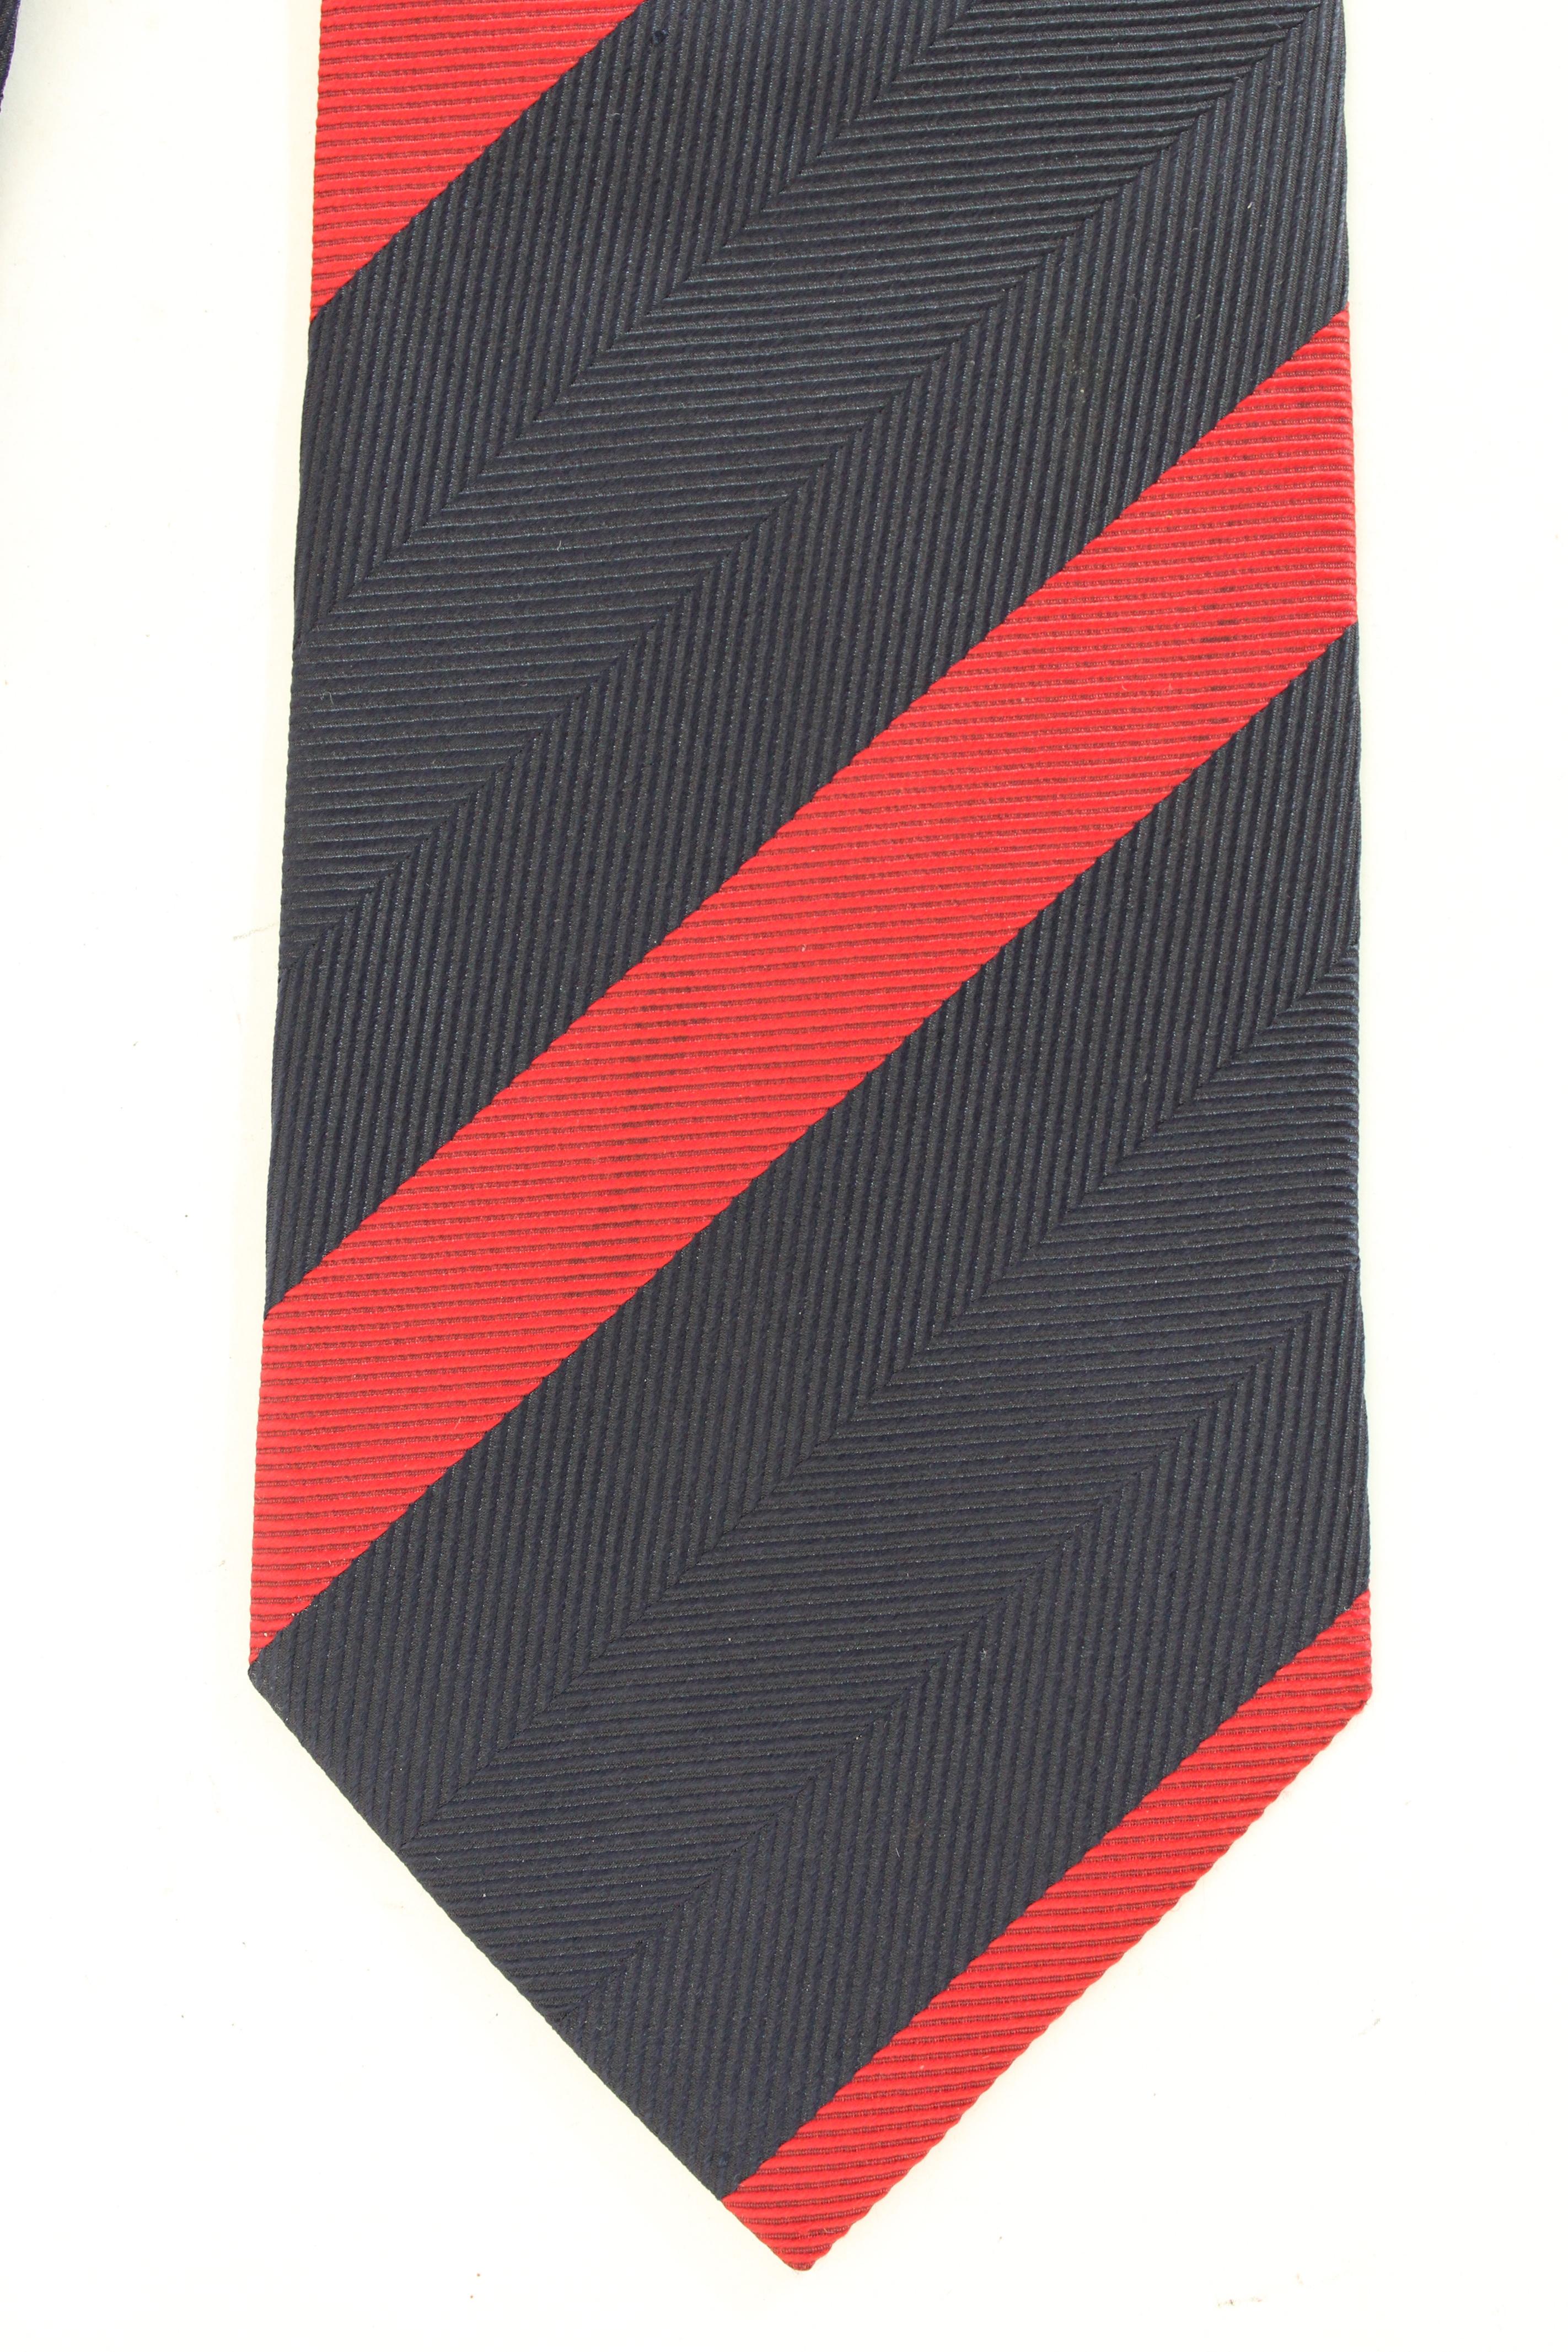 who can wear a regimental tie